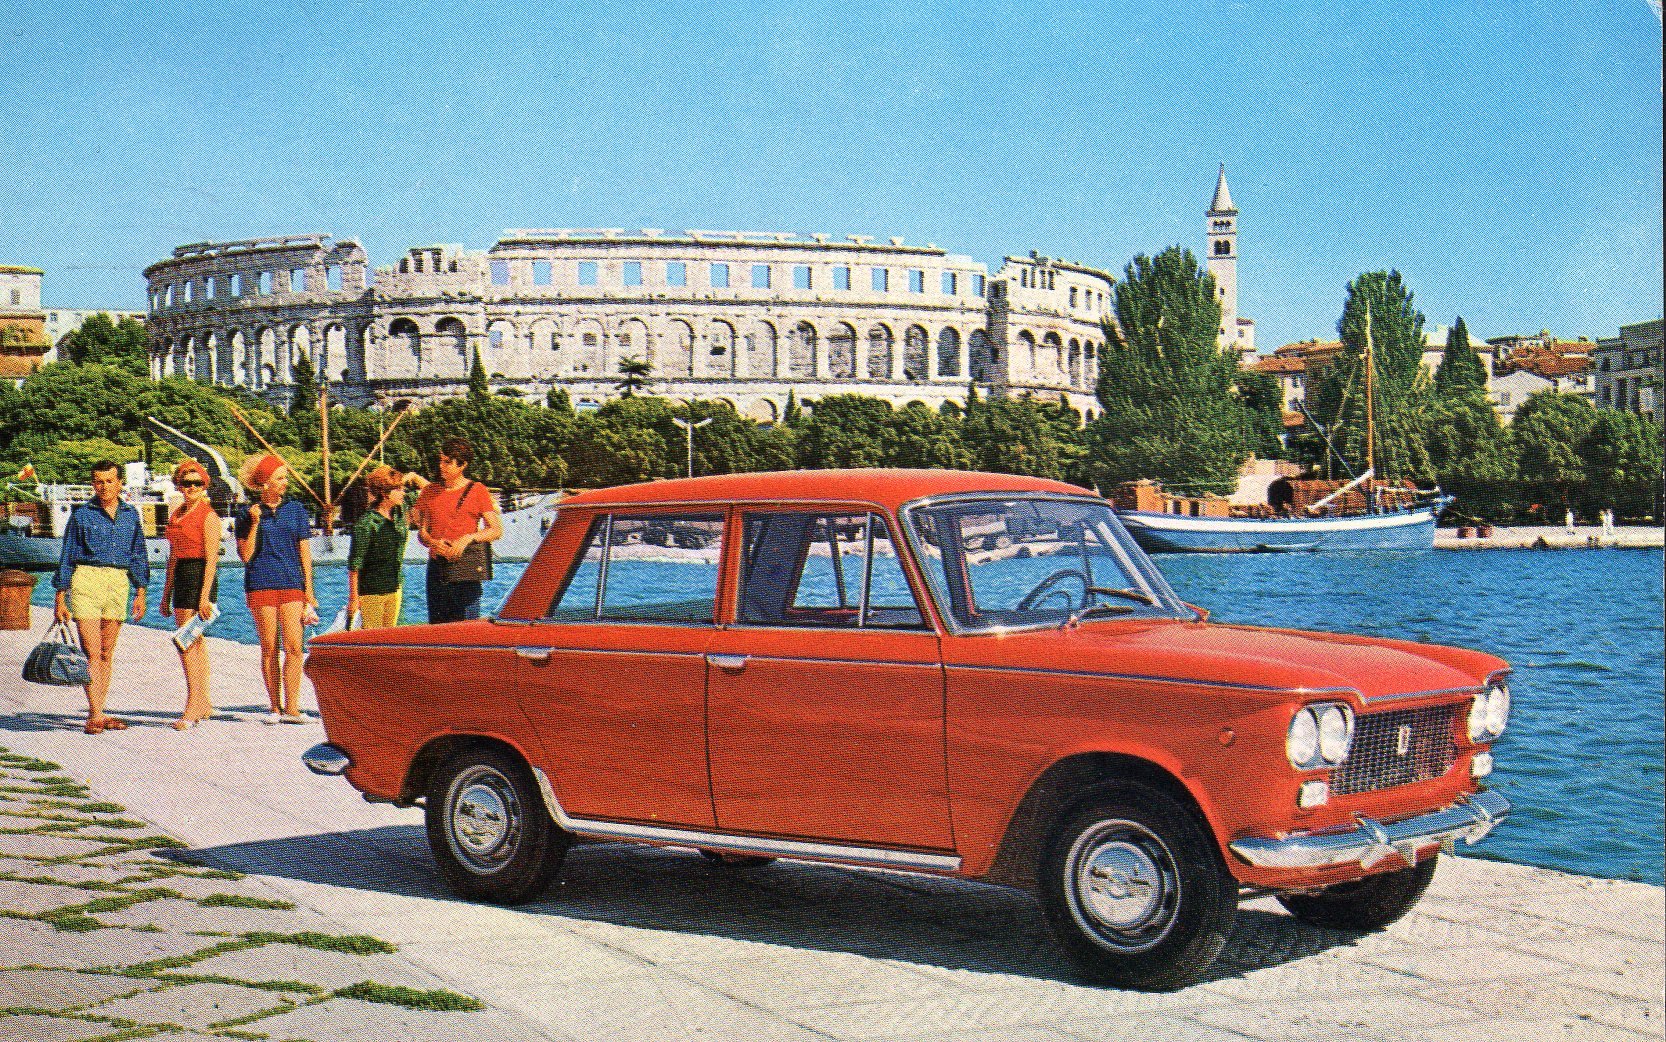 Zastava 1300, ili popularno nazvani tristać, bio je automobil koji se proizvodio na bazi Fiata 1300 u Kragujevcu. U 18 godina proizvedeno ih je preko 200.000, a u Jugoslaviji je tristać bio simbol luksuza i plijenio je poglede prolaznika. Mehanički sličan automobil različitog dizajna proizvodio je i poljski FSO, pod imenom Polski Fiat 125p. Zastava je izrađivala identičan model, koji se zvao 125pz, pa je dobio nadimak "pezejac".